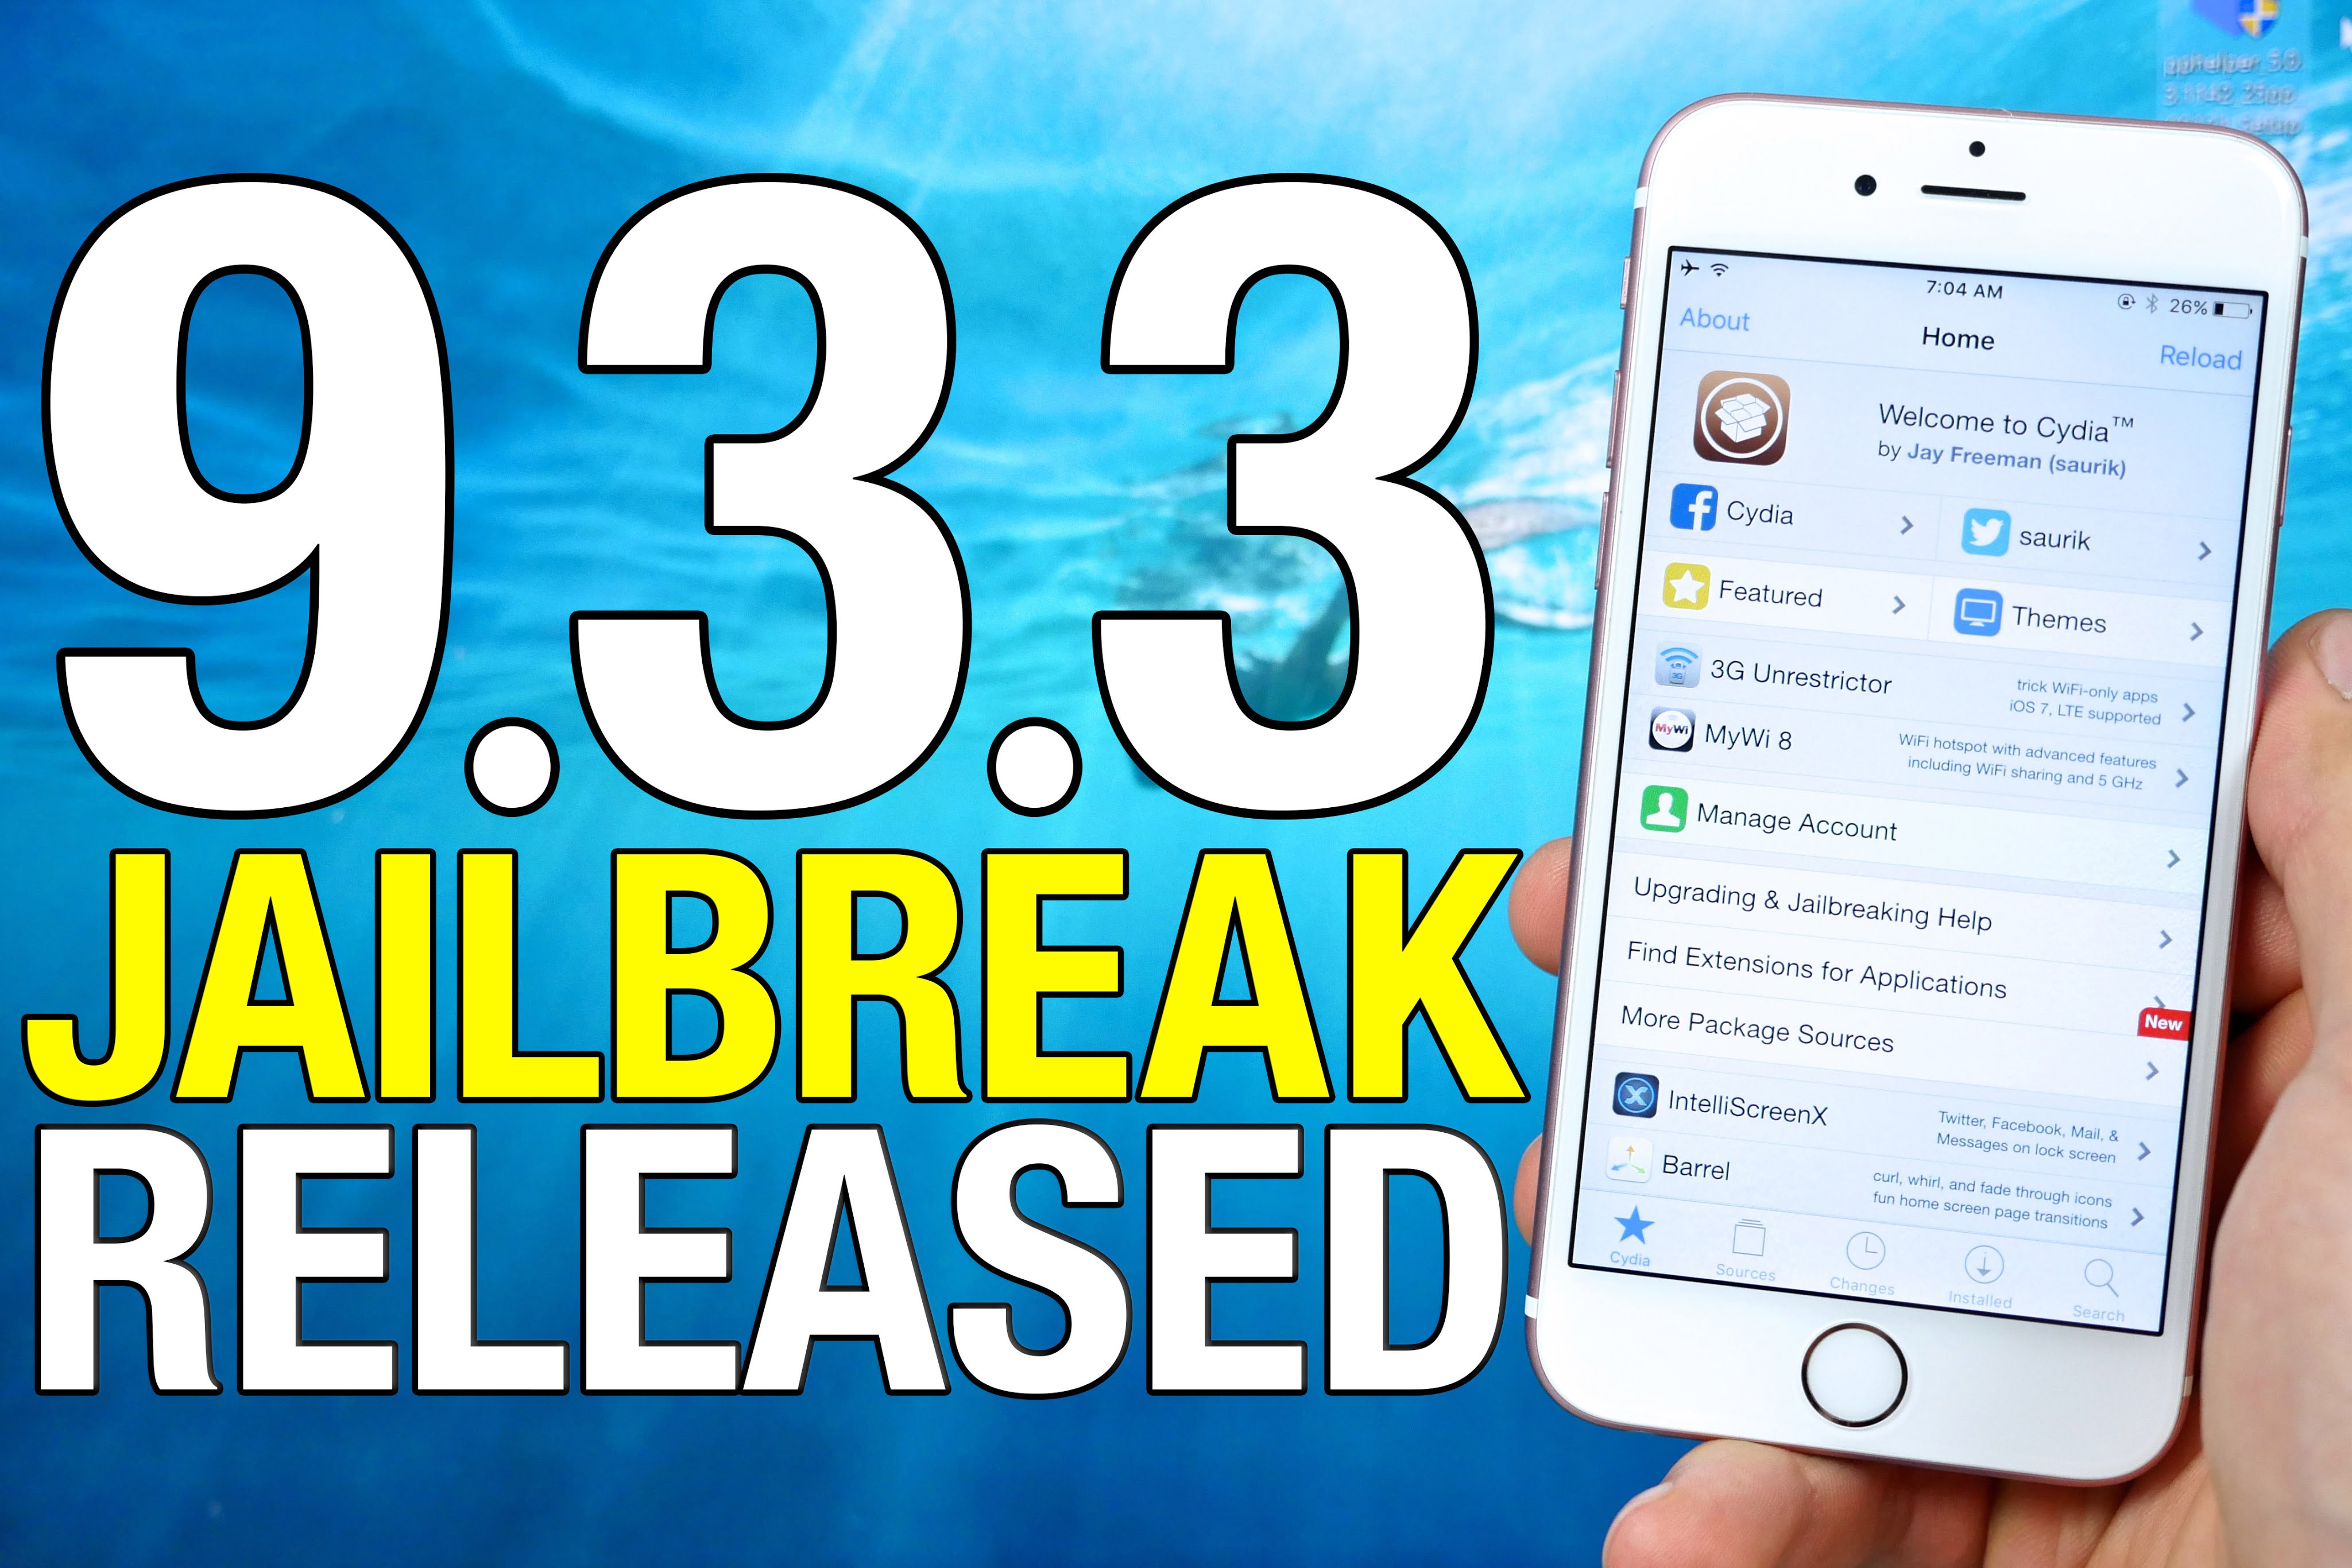 Jailbreak iOS 9.3.3 tramite Safari: ecco come procedere